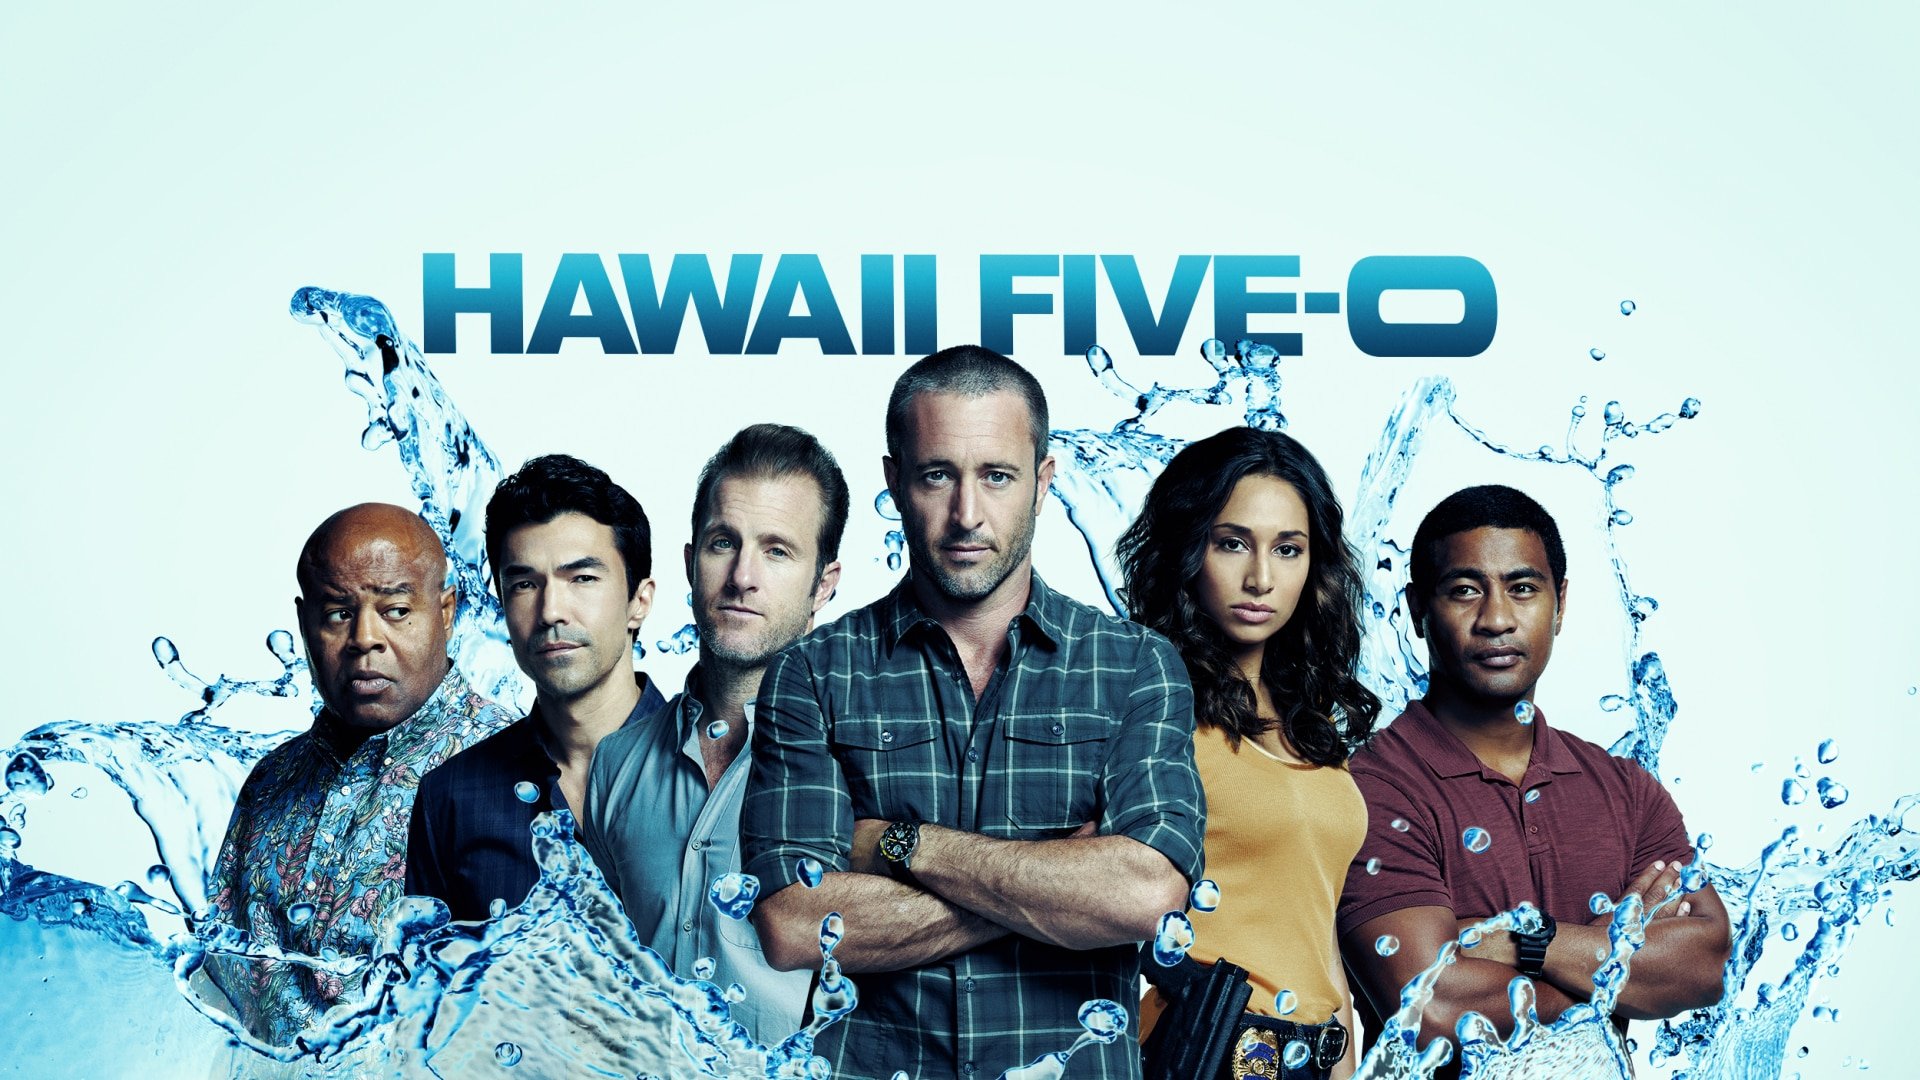 Watch Hawaii Five-0 Online - Stream Full Episodes